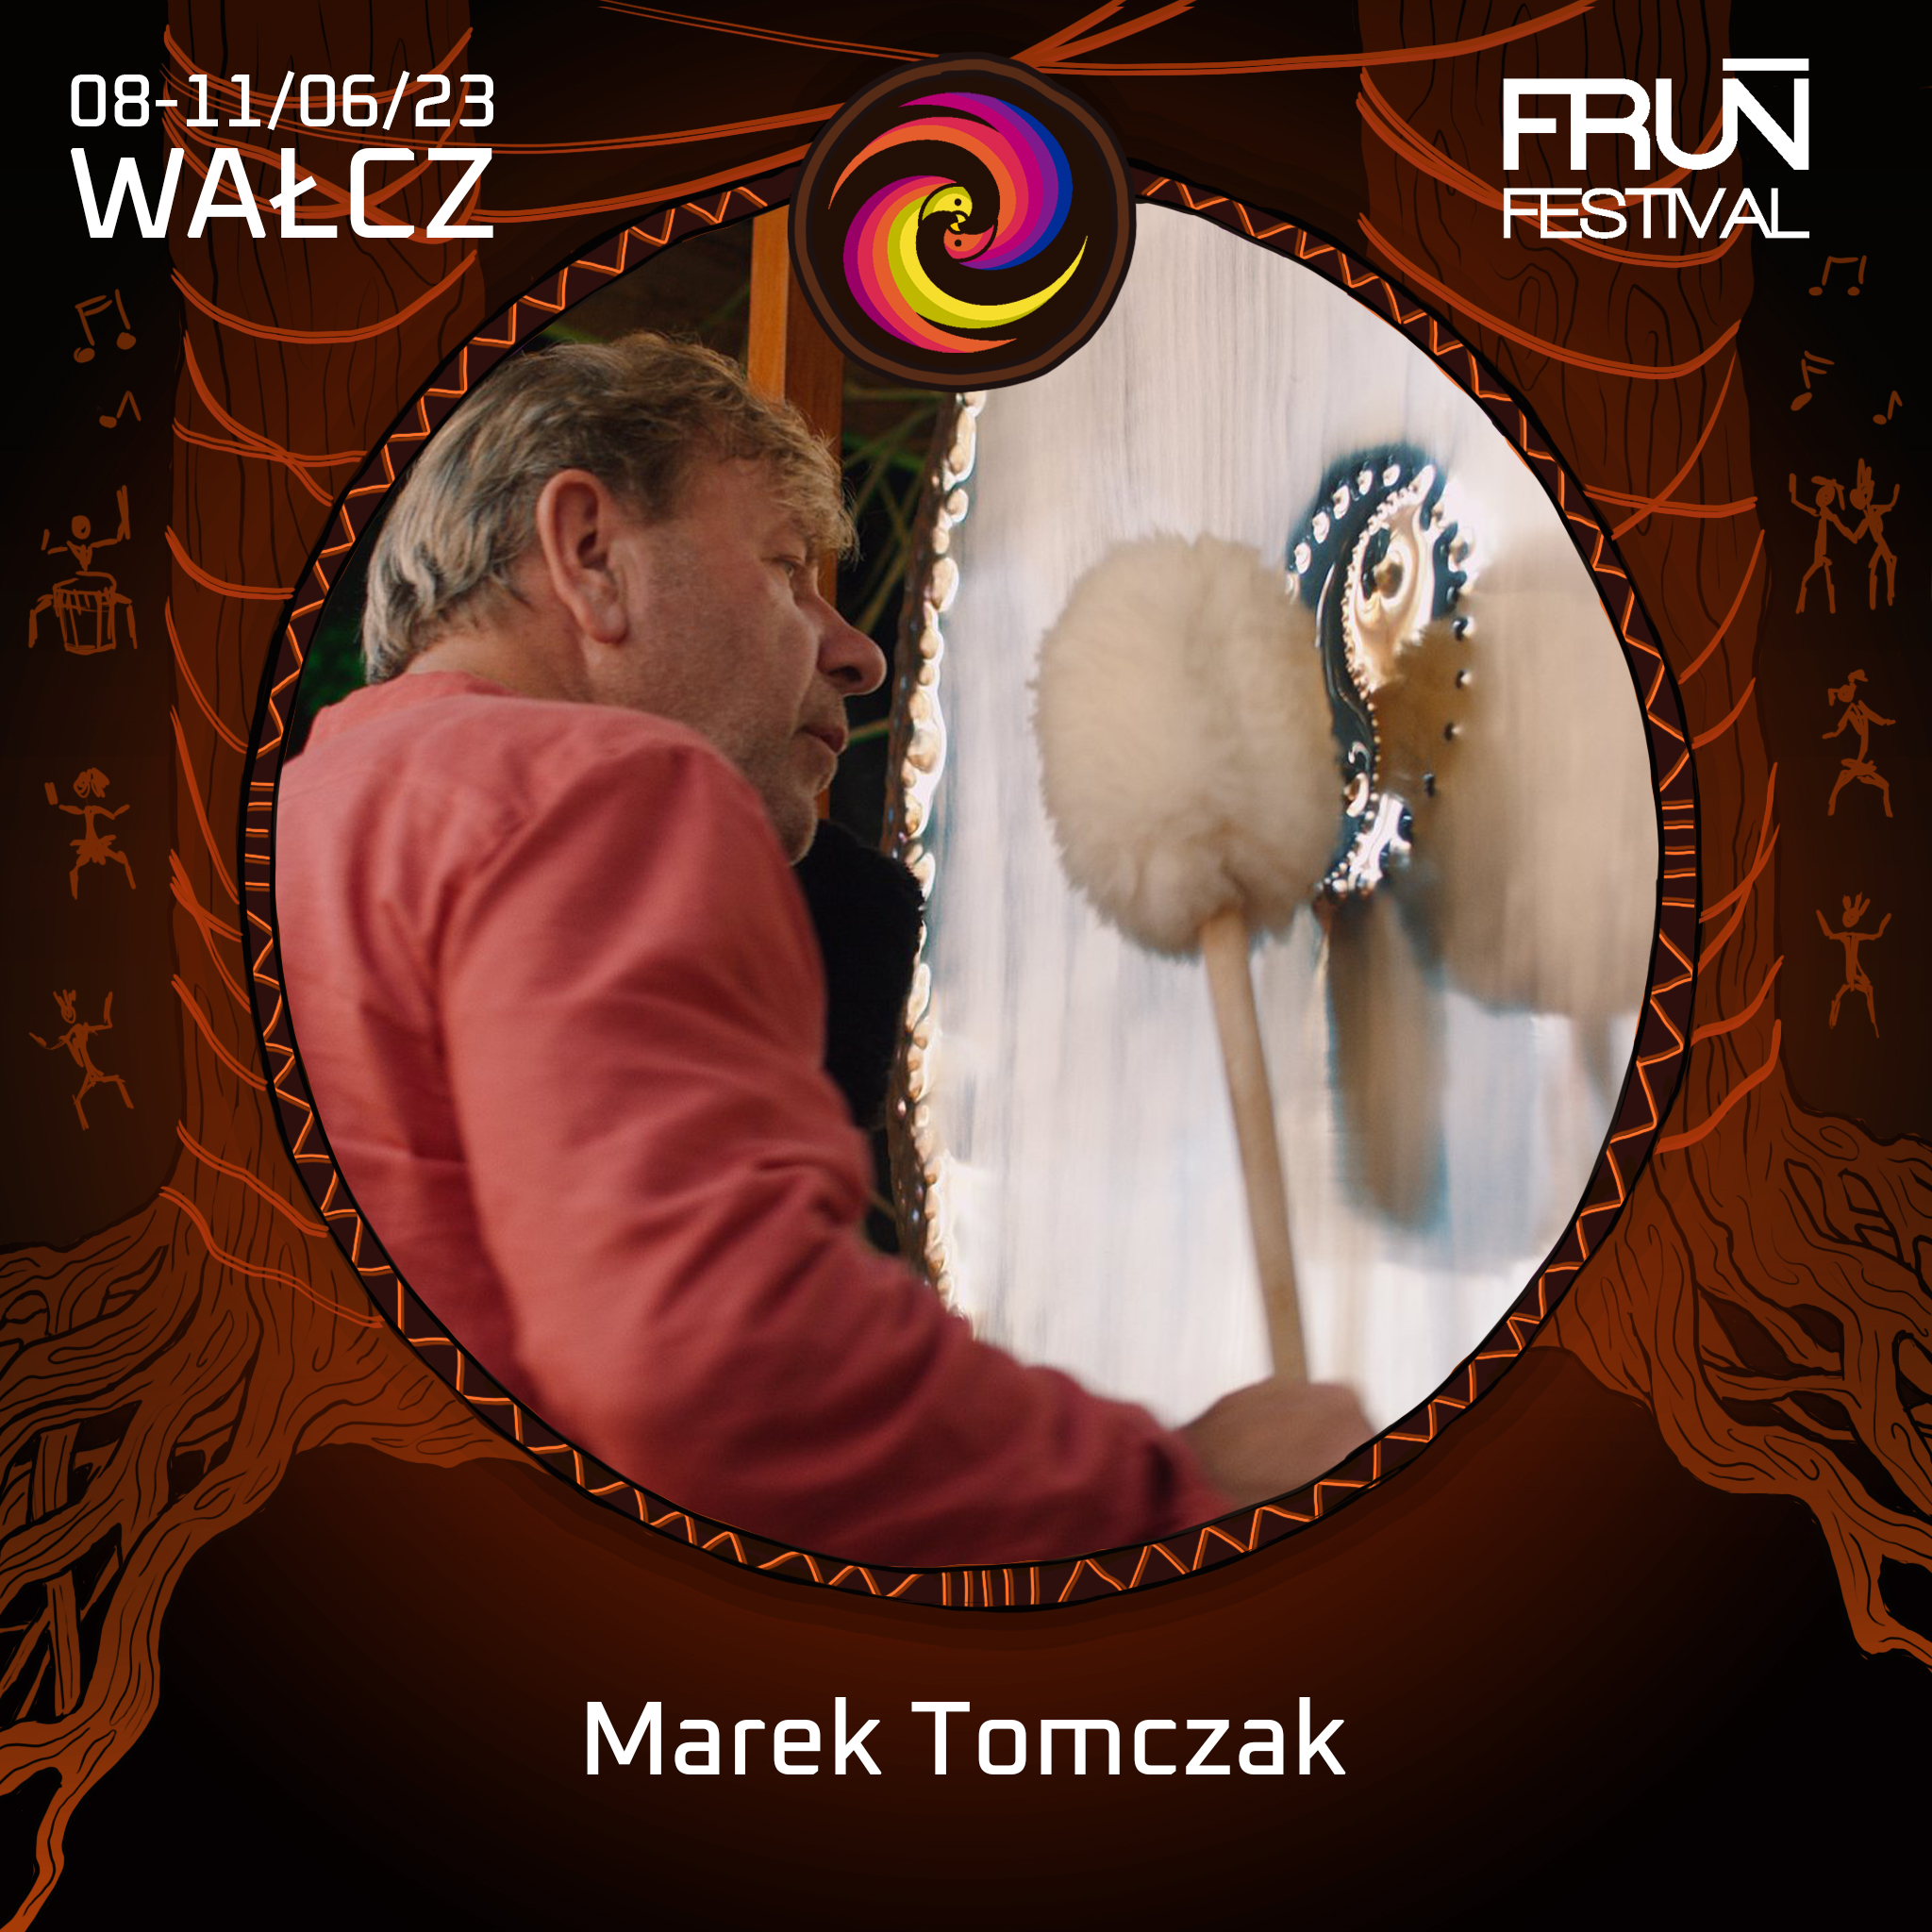 Marek Tomczak